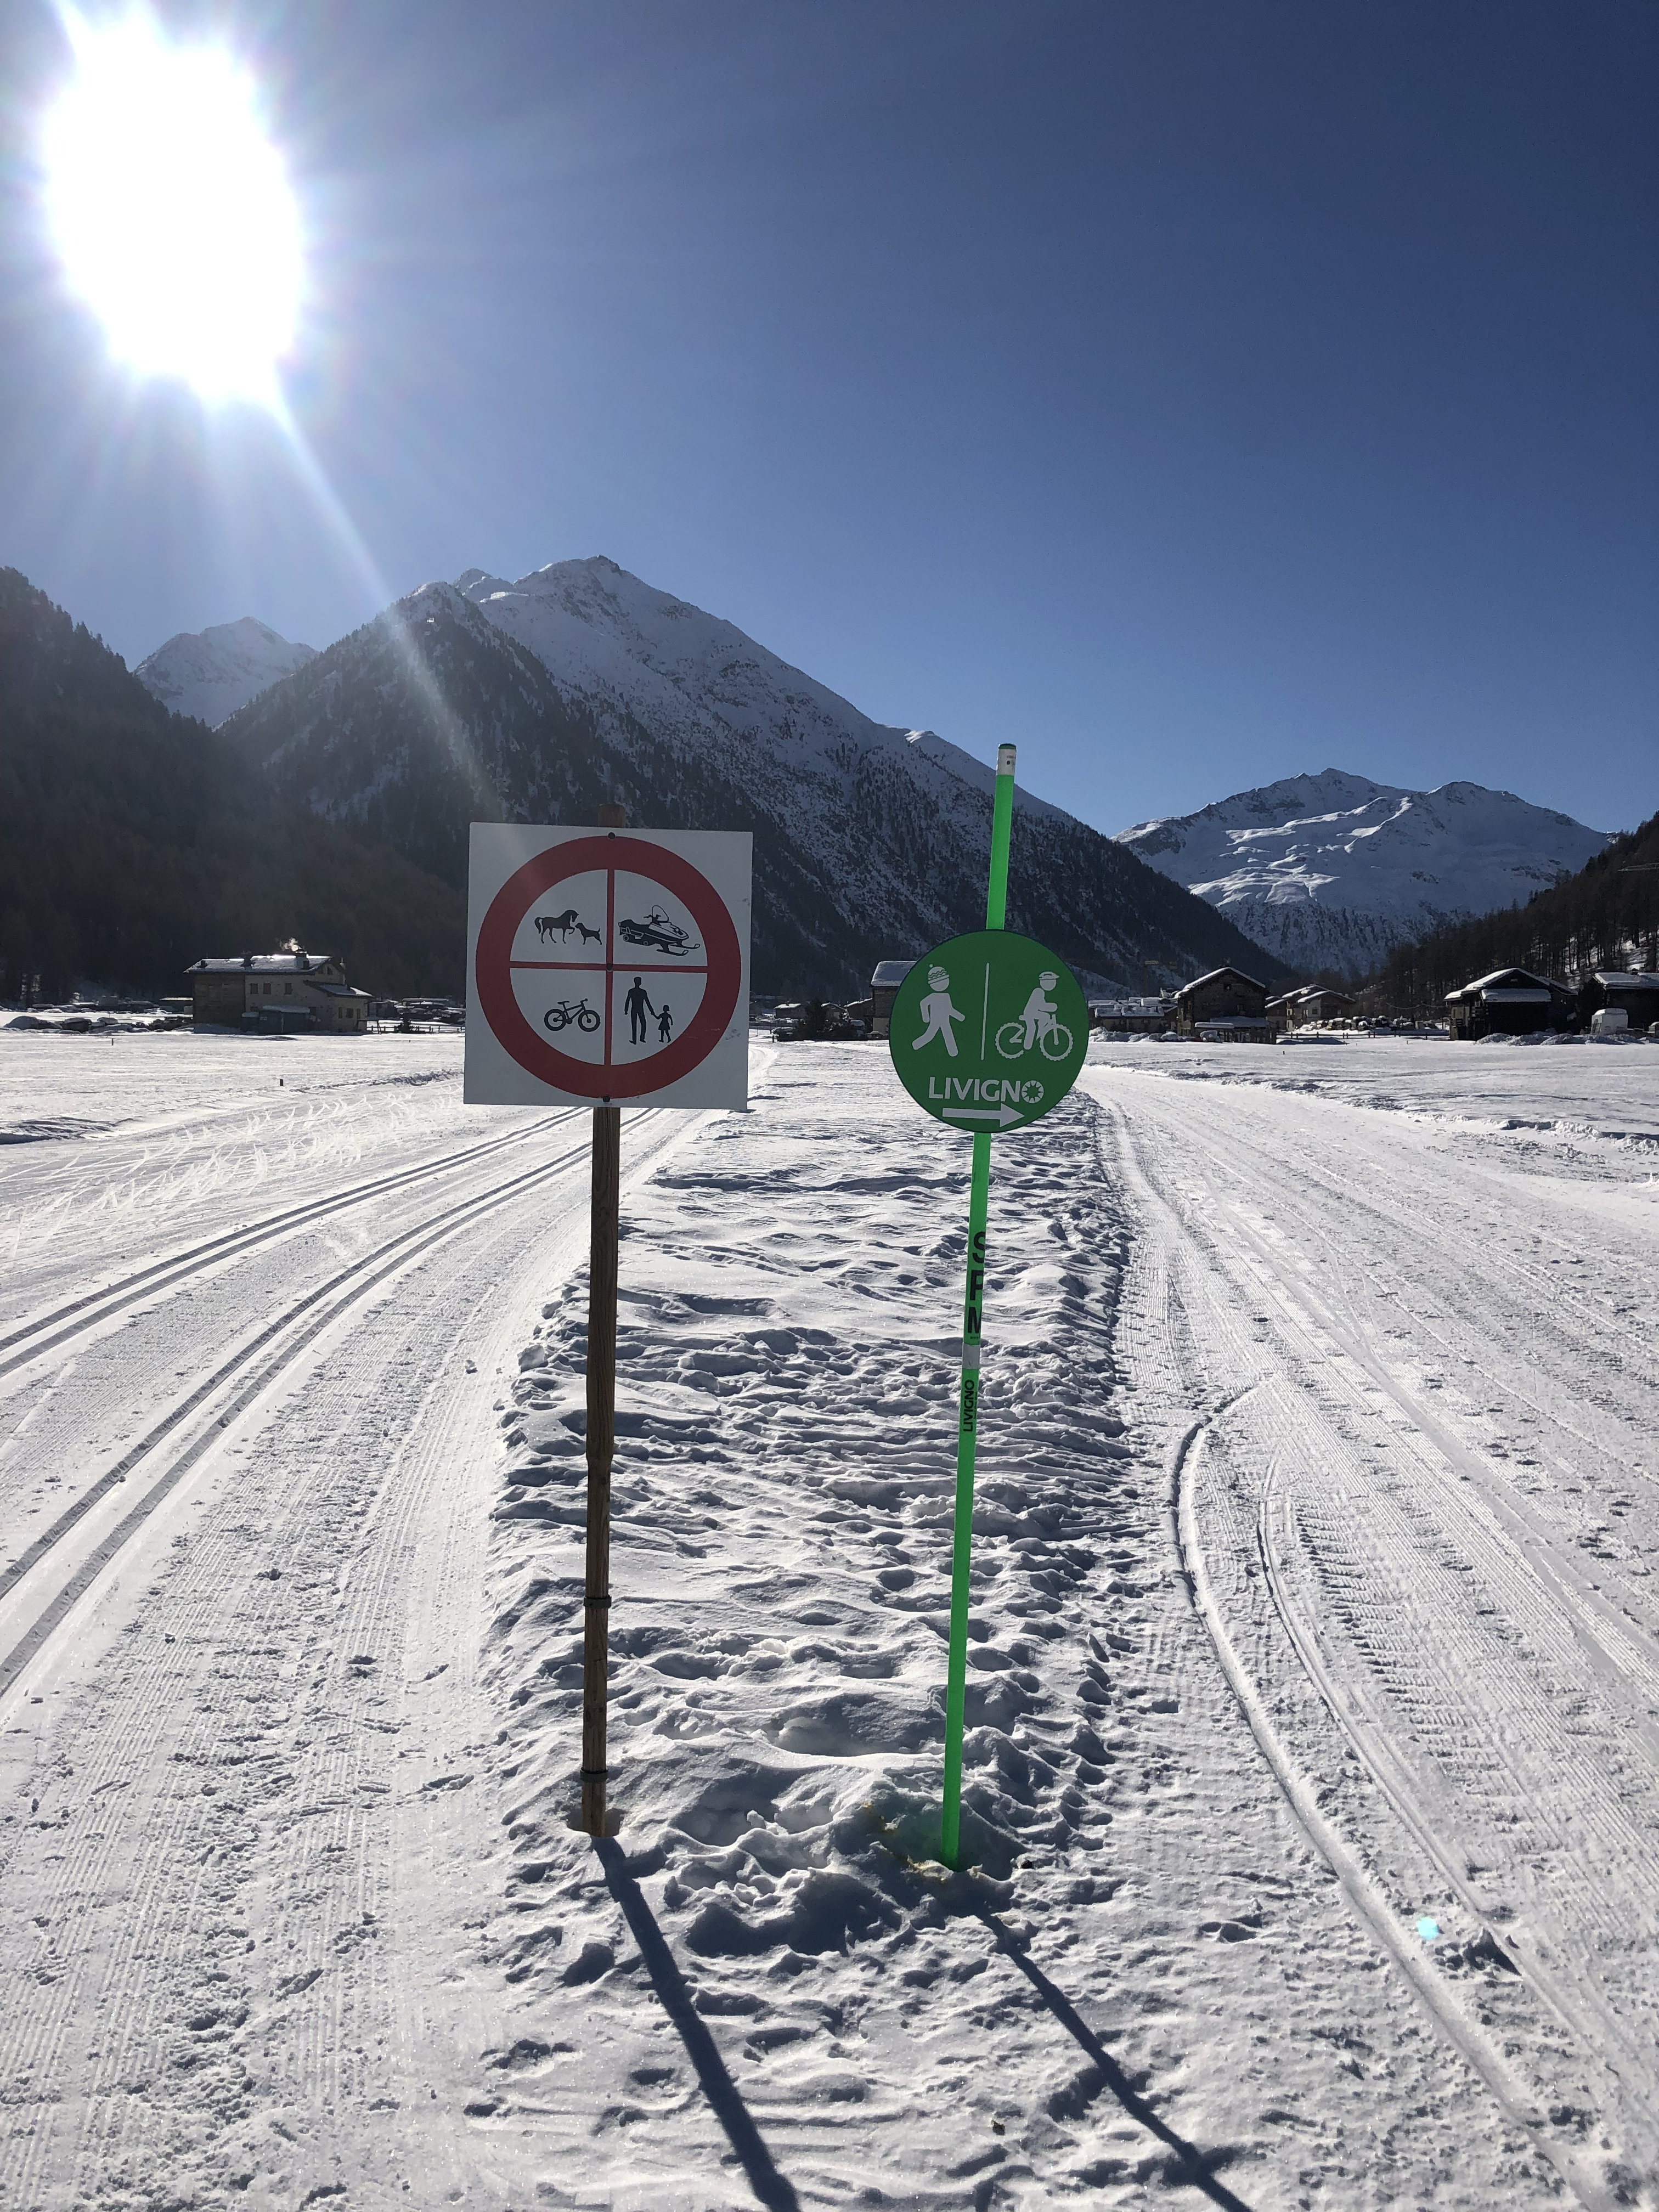 Bilde av de to formene for traseer som har blitt etablert i Livigno- én for gående og én for skiløpere. Begge deler er godt merket med skilt og løypestikker. 